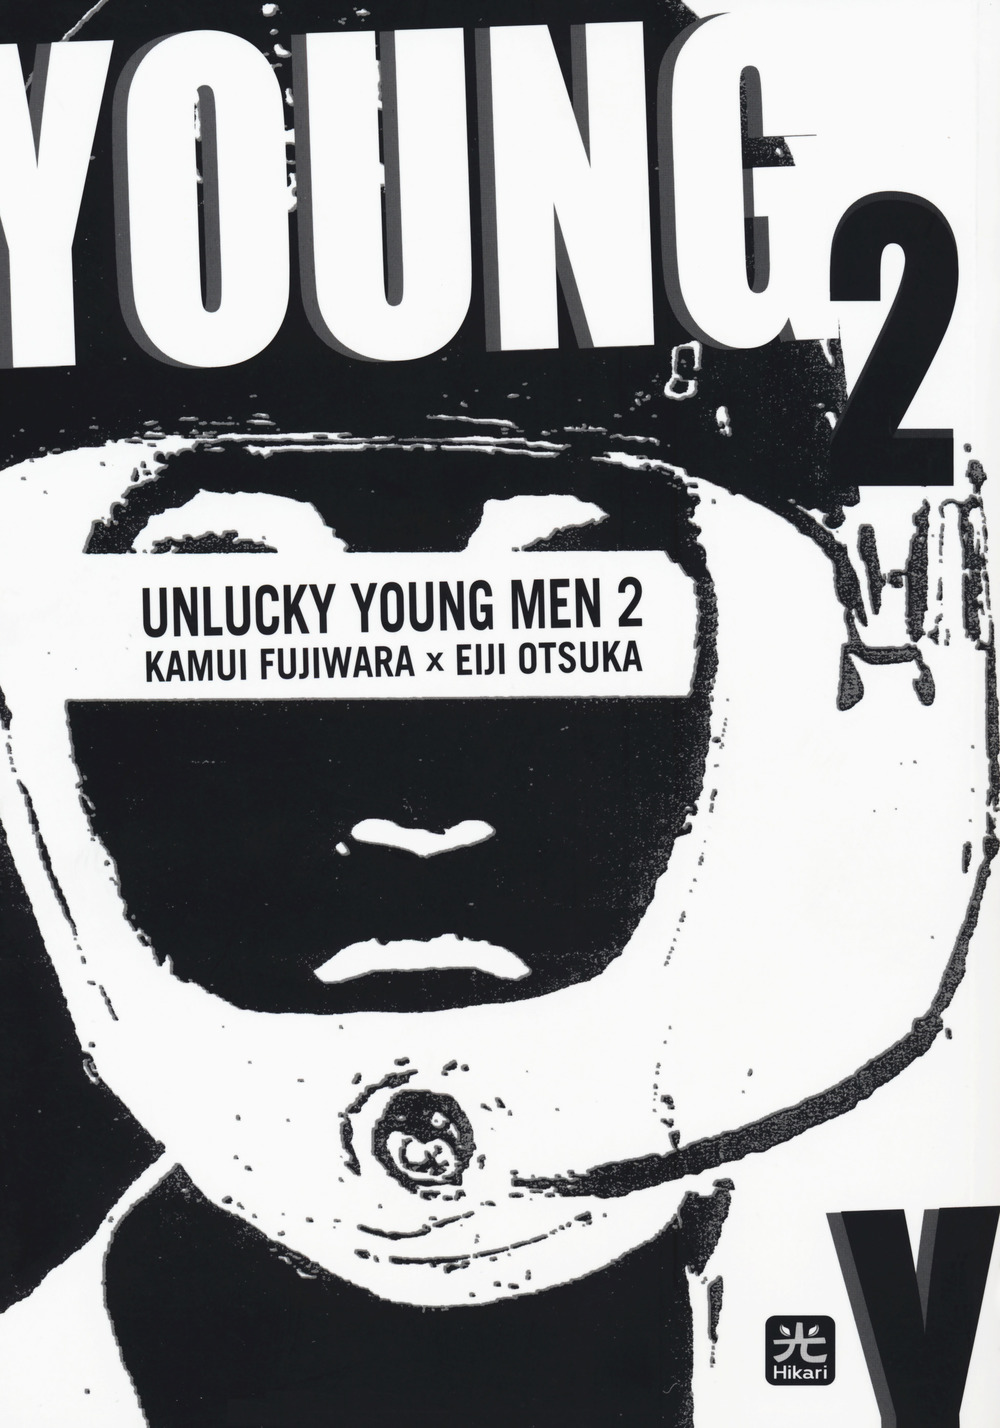 Unlucky young men. Vol. 2